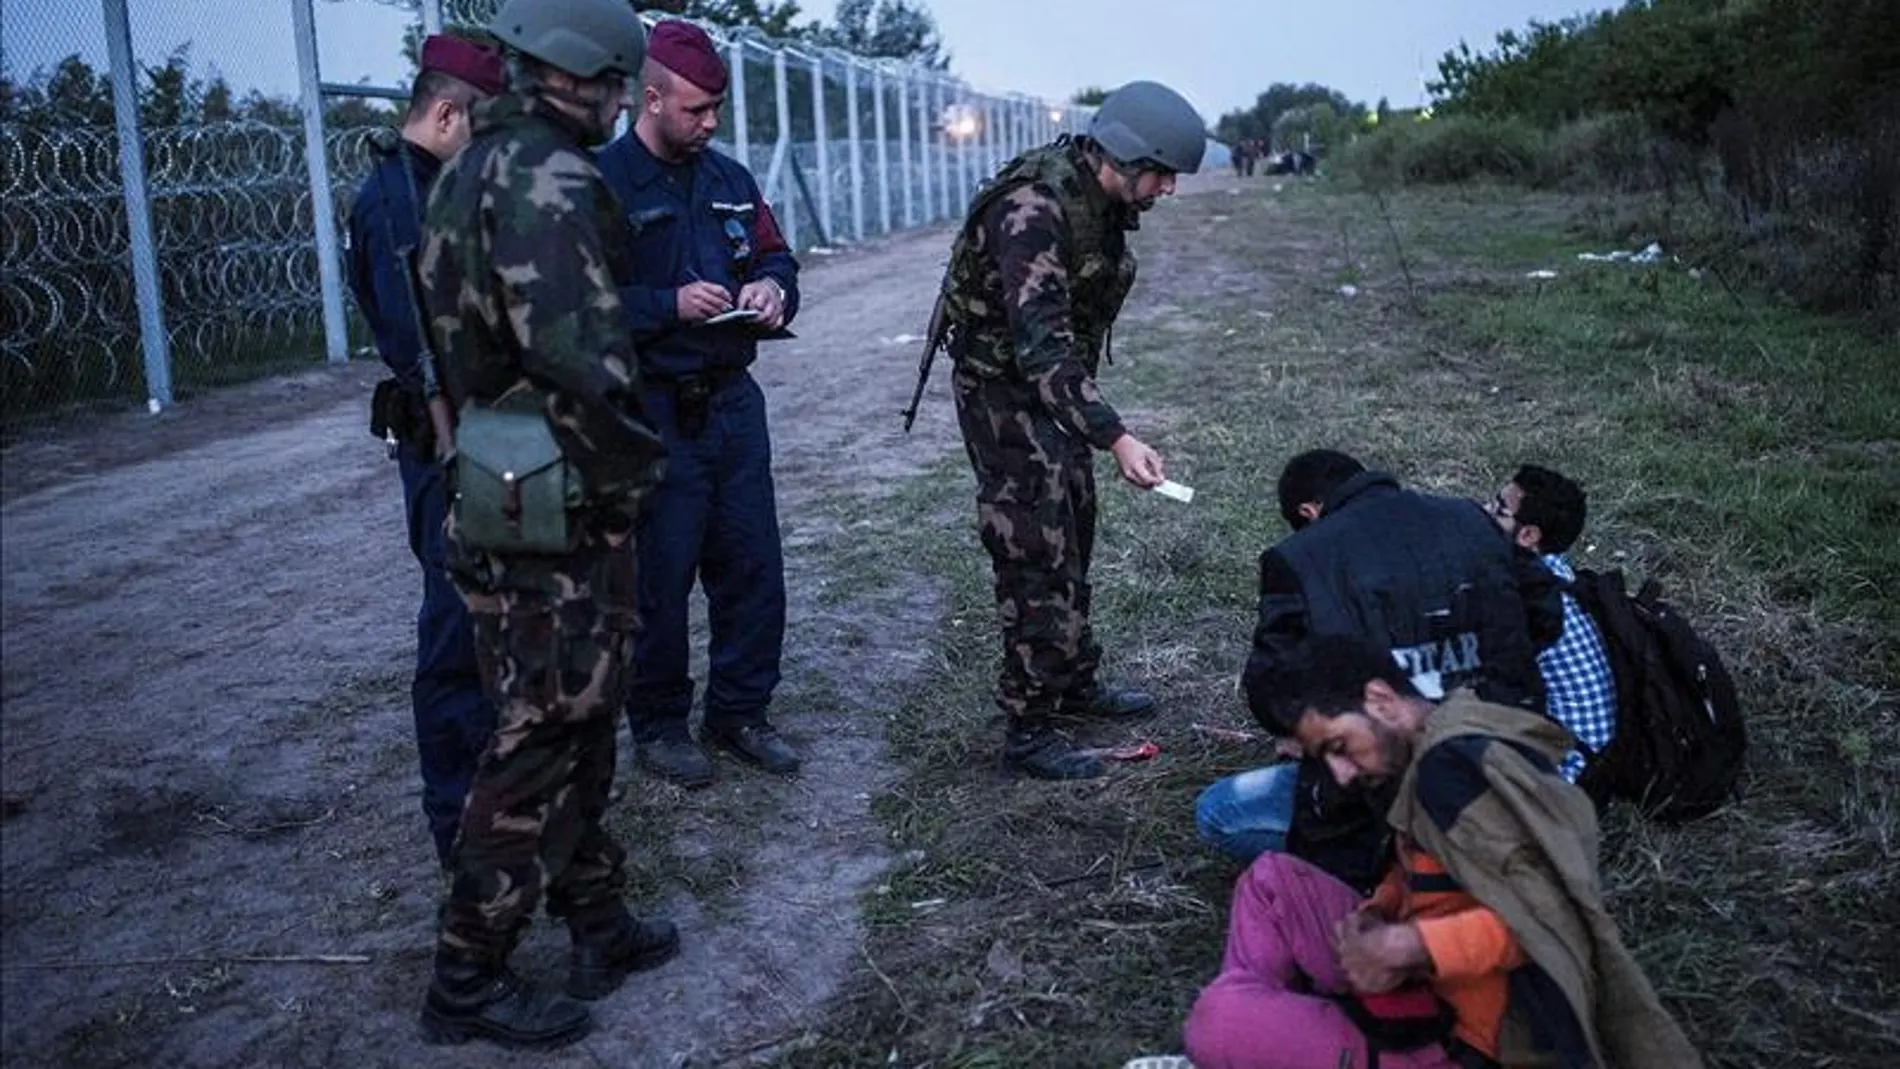 Policías y soldados comprueban la documentación de varios refugiados en la frontera entre Serbia y Hungría